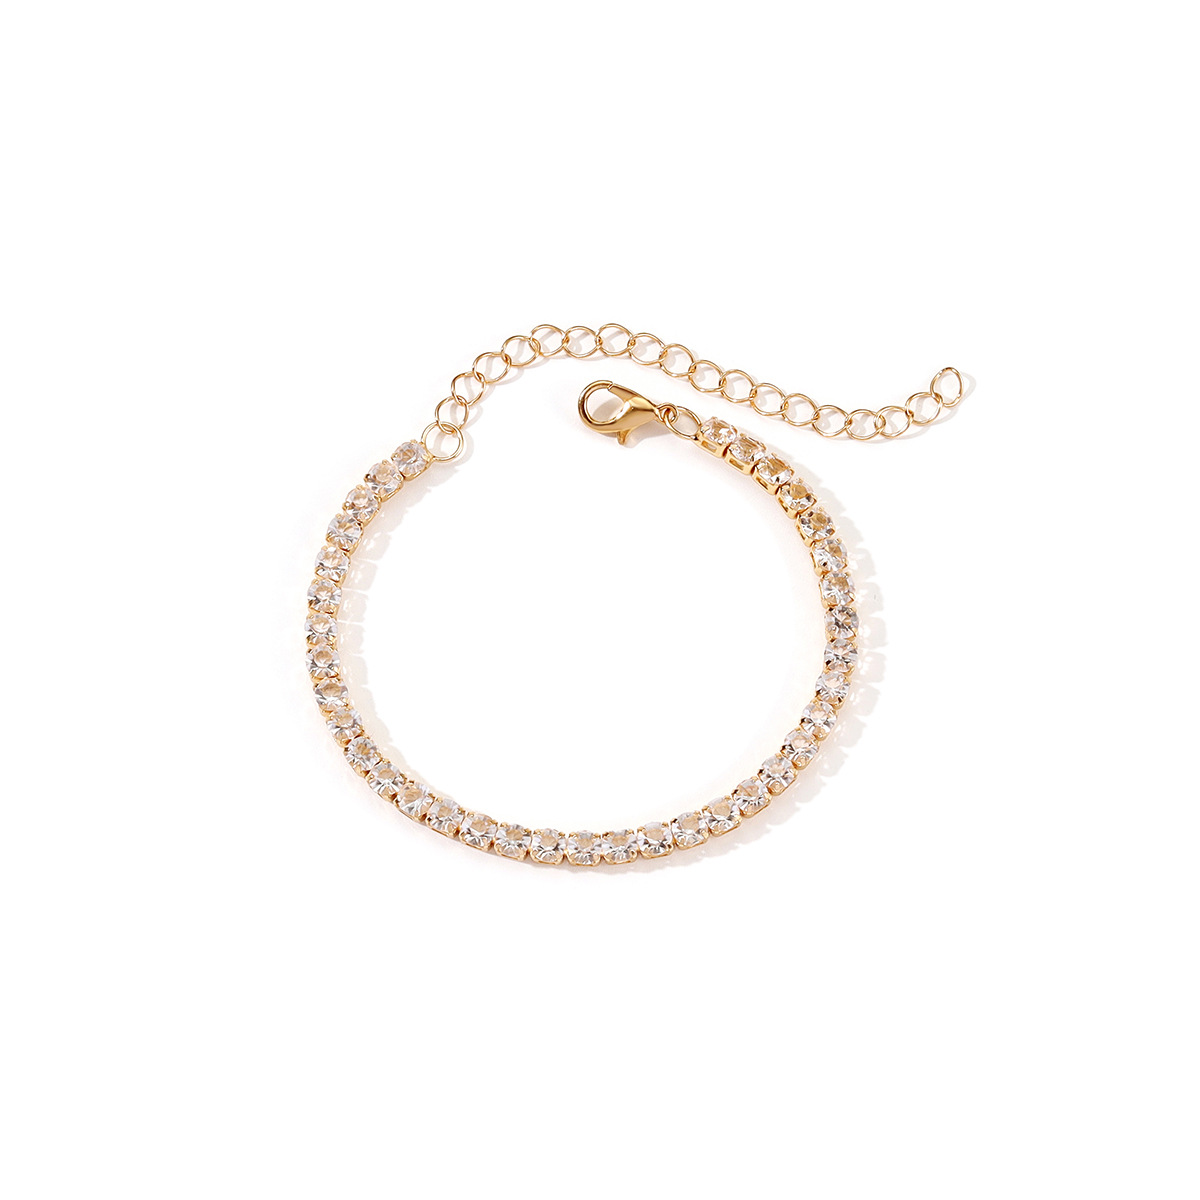 7:Transparent gold bracelet